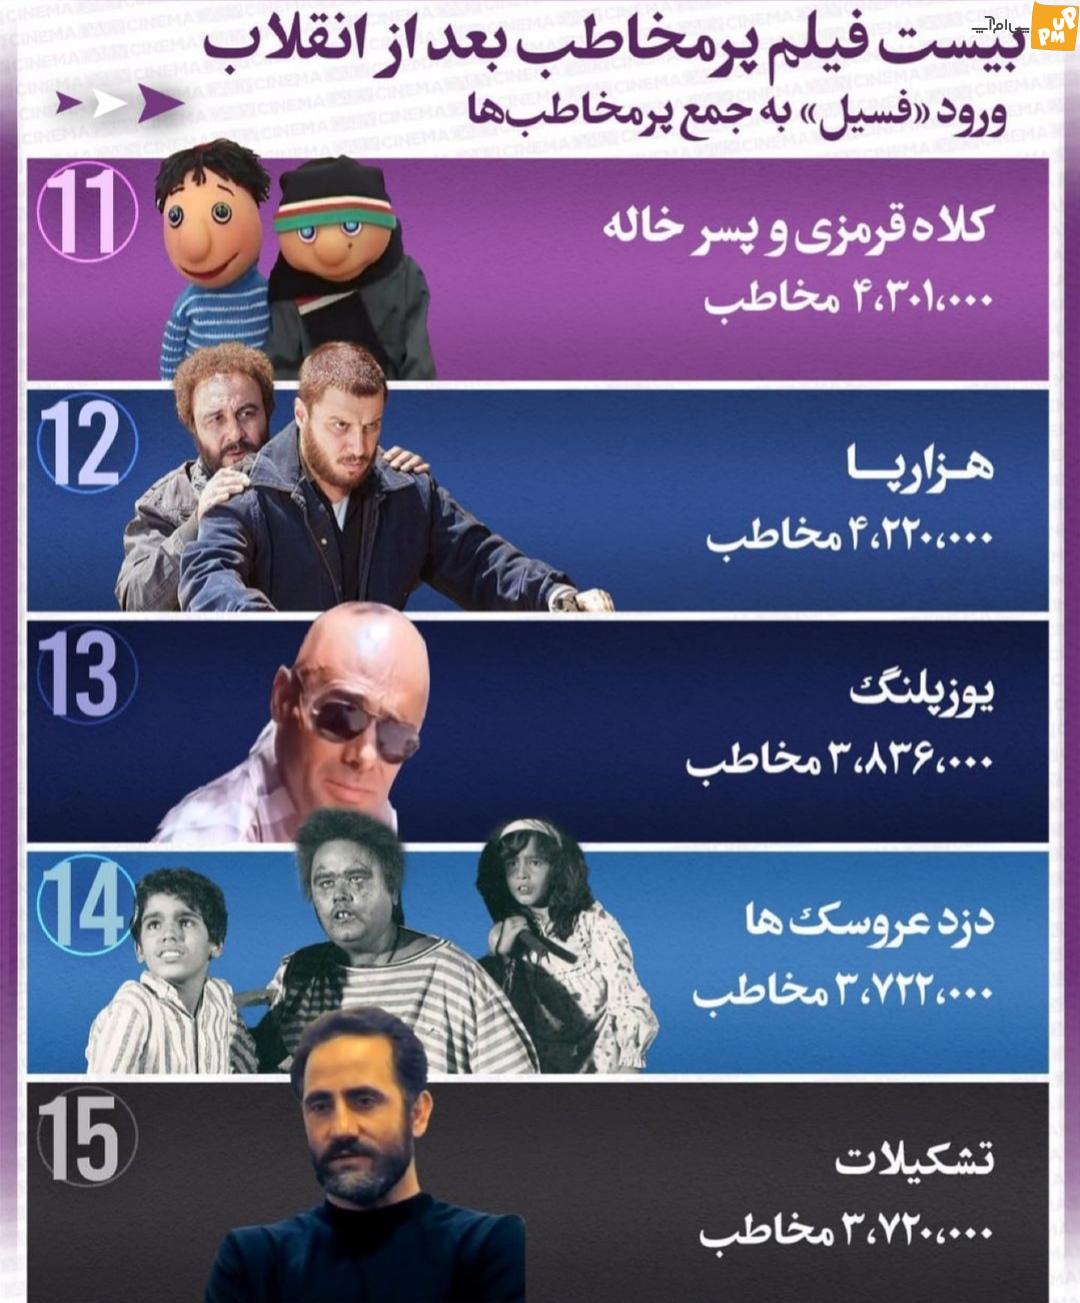 لیست ۲۰ فیلم پر مخاطب بعد از انقلاب اسلامی/ فسیل به این لیست اضافه شد!